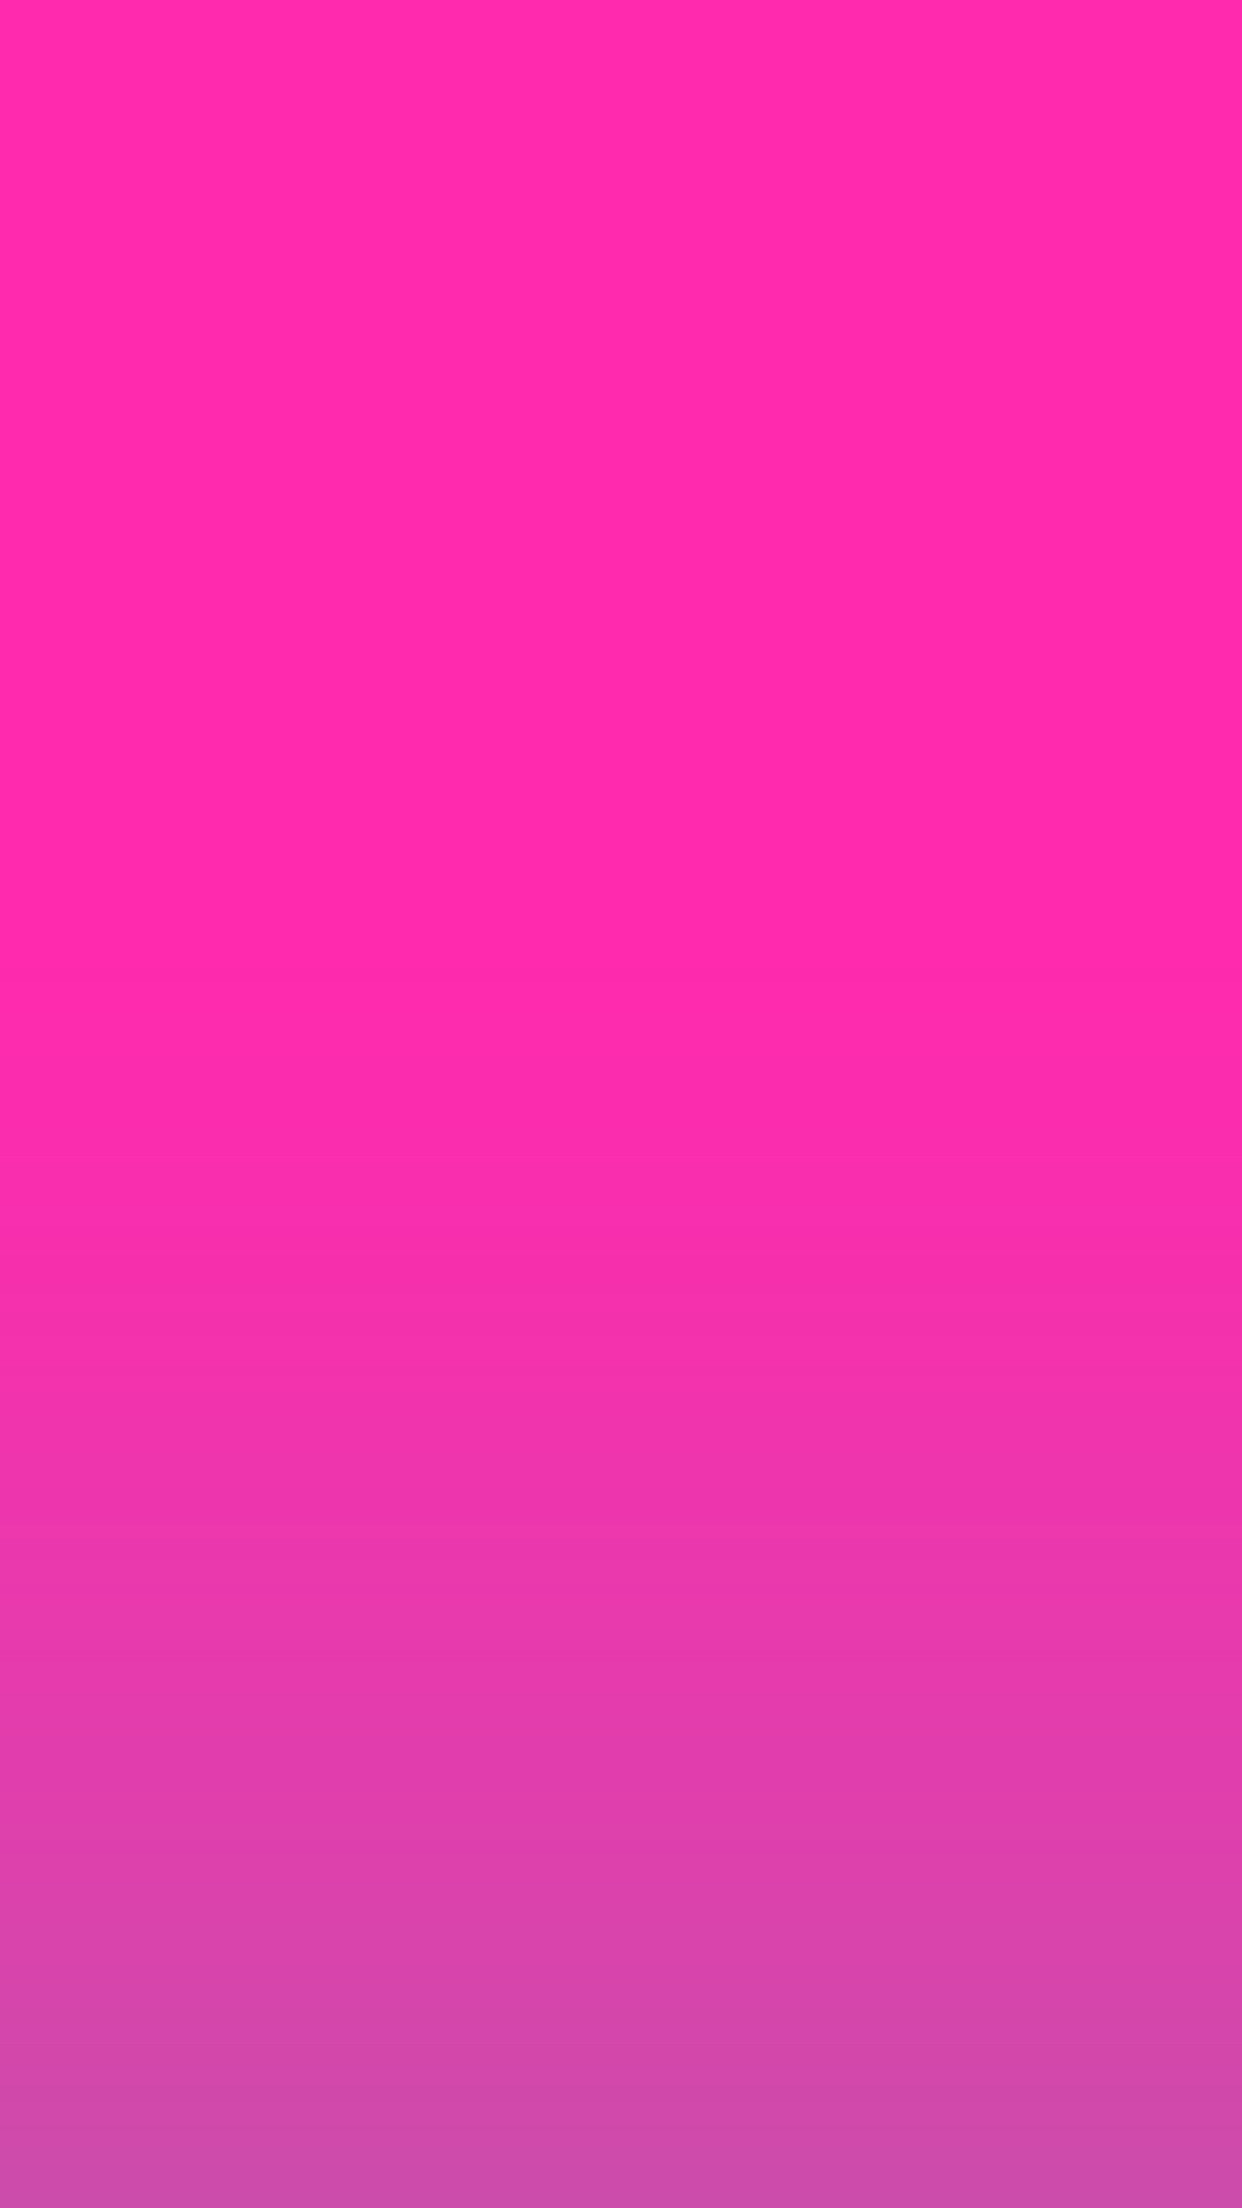 Pink, purple, gradient, ombre, wallpaper, iPhone